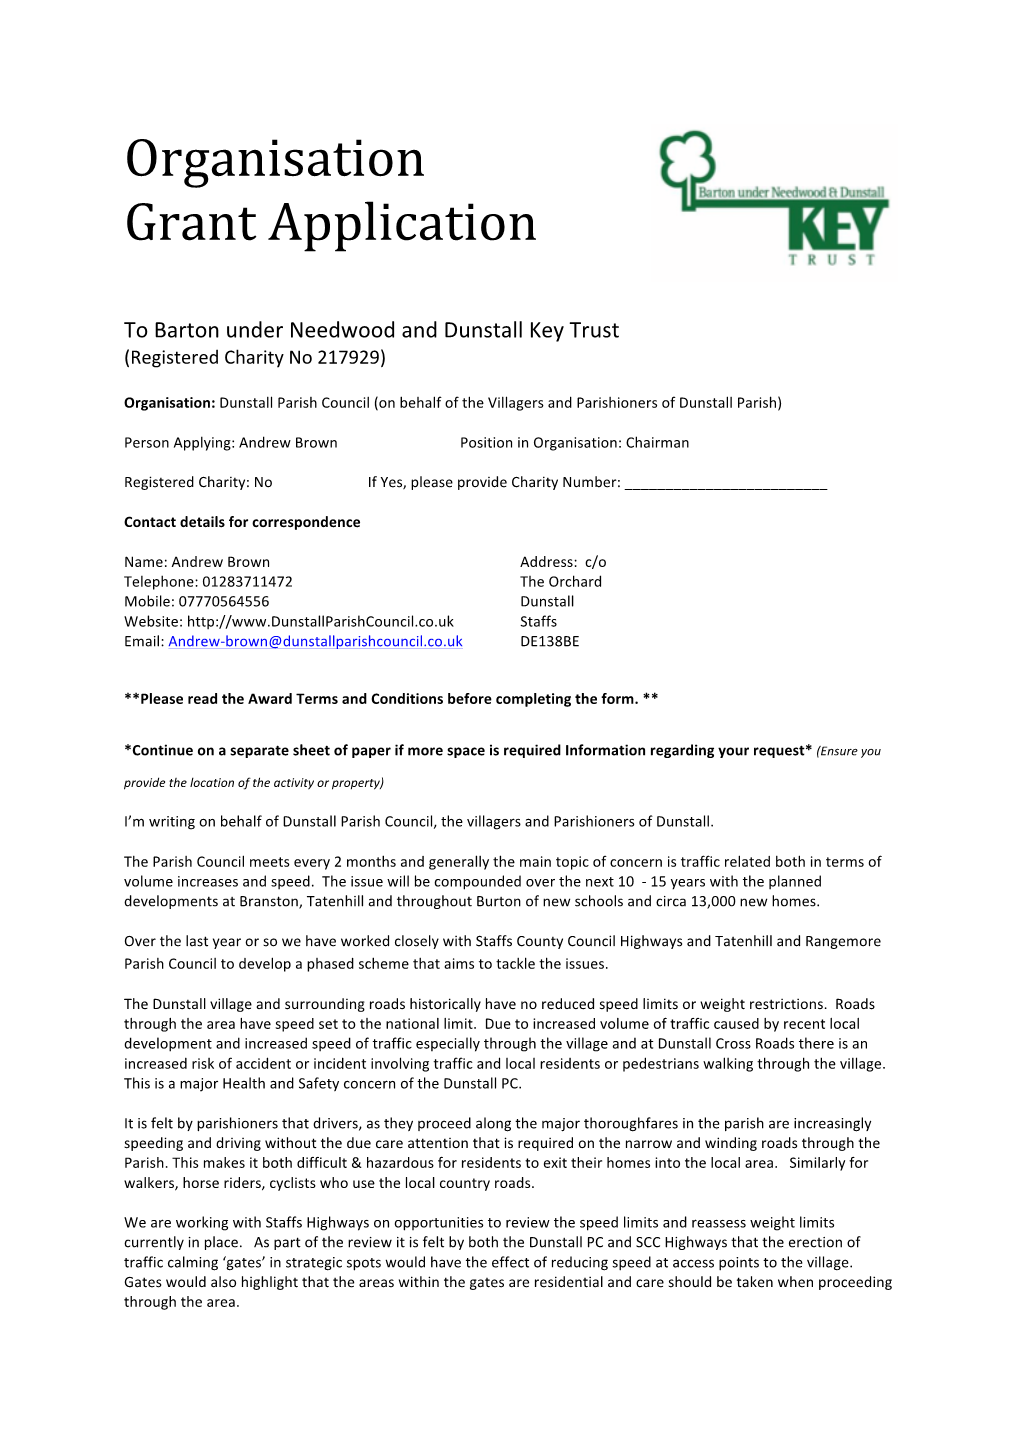 Organisation Grant Application